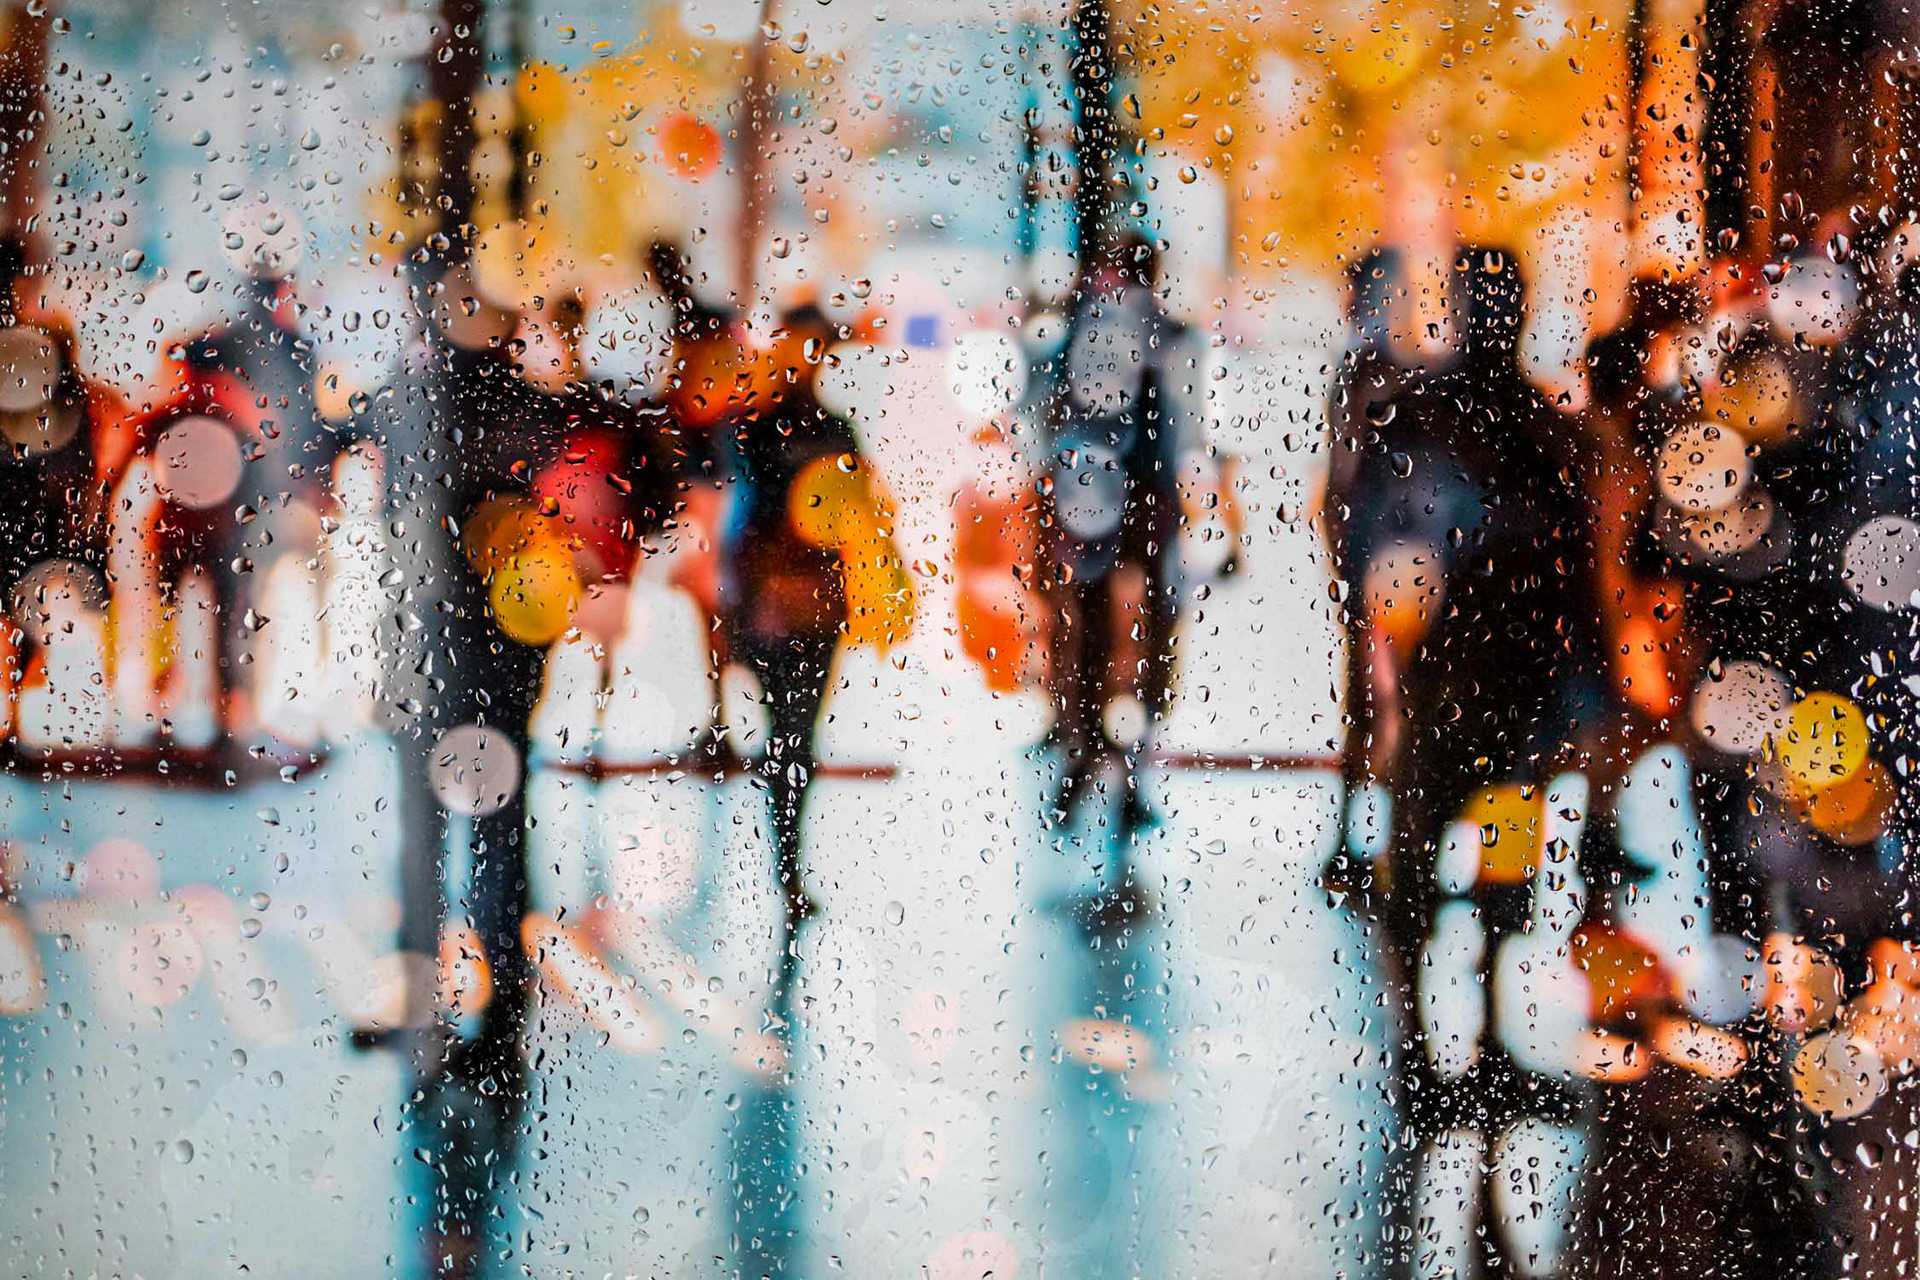 ▷ Rainy days in New York V by Sven Pfrommer, 2015